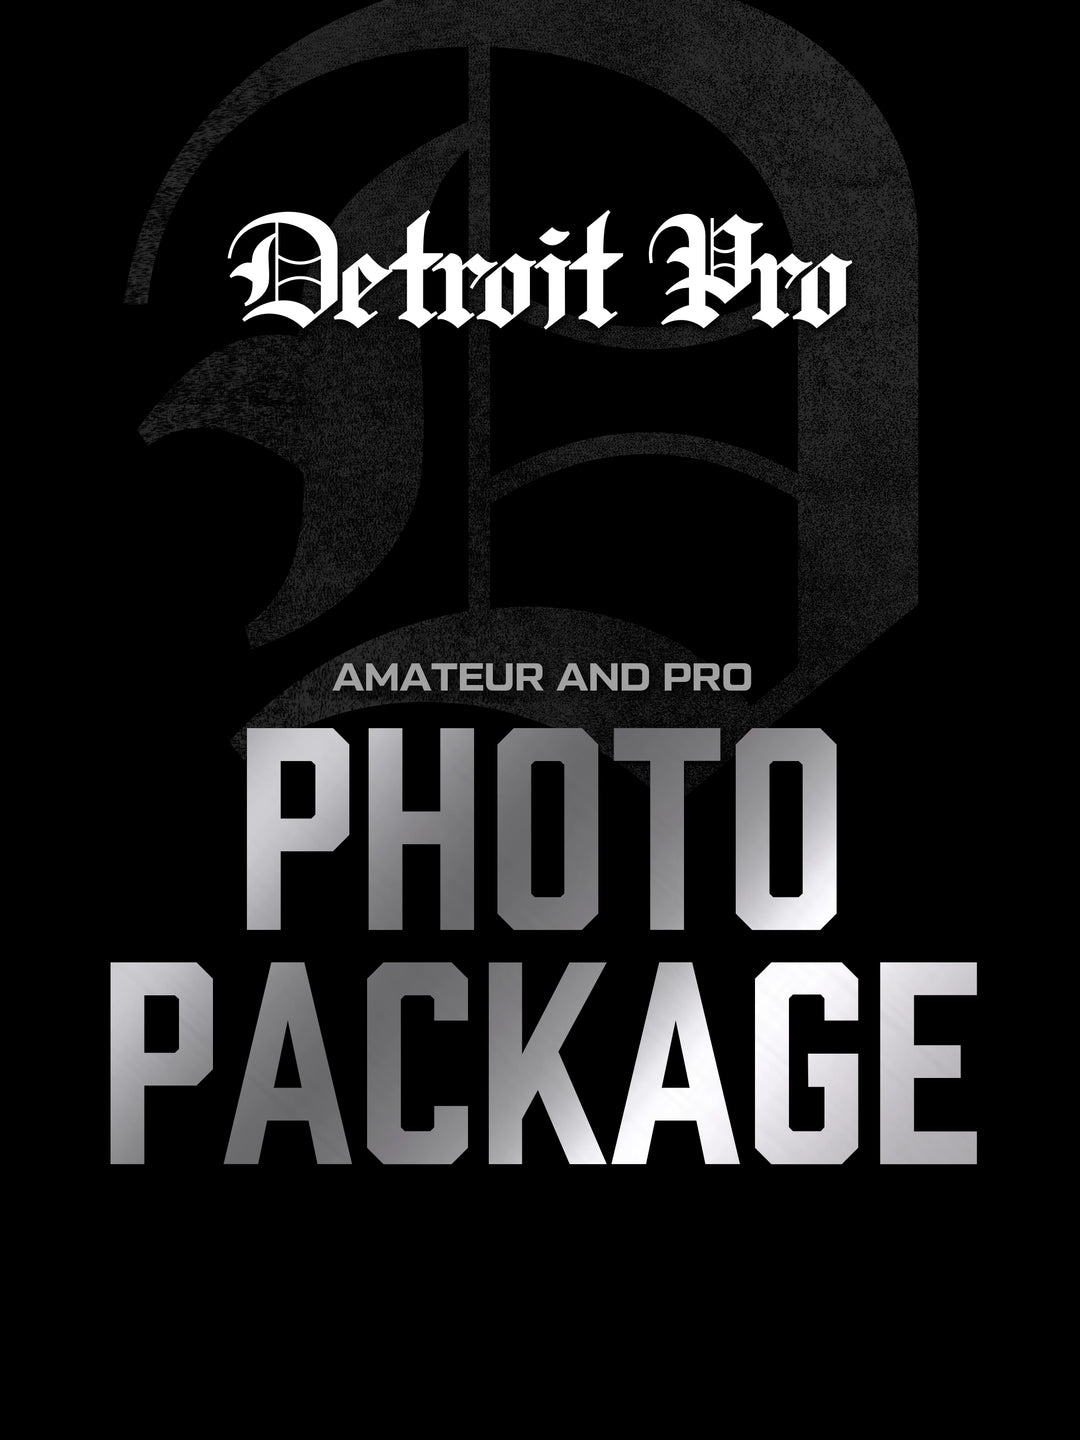 Detroit Pro Photo Package